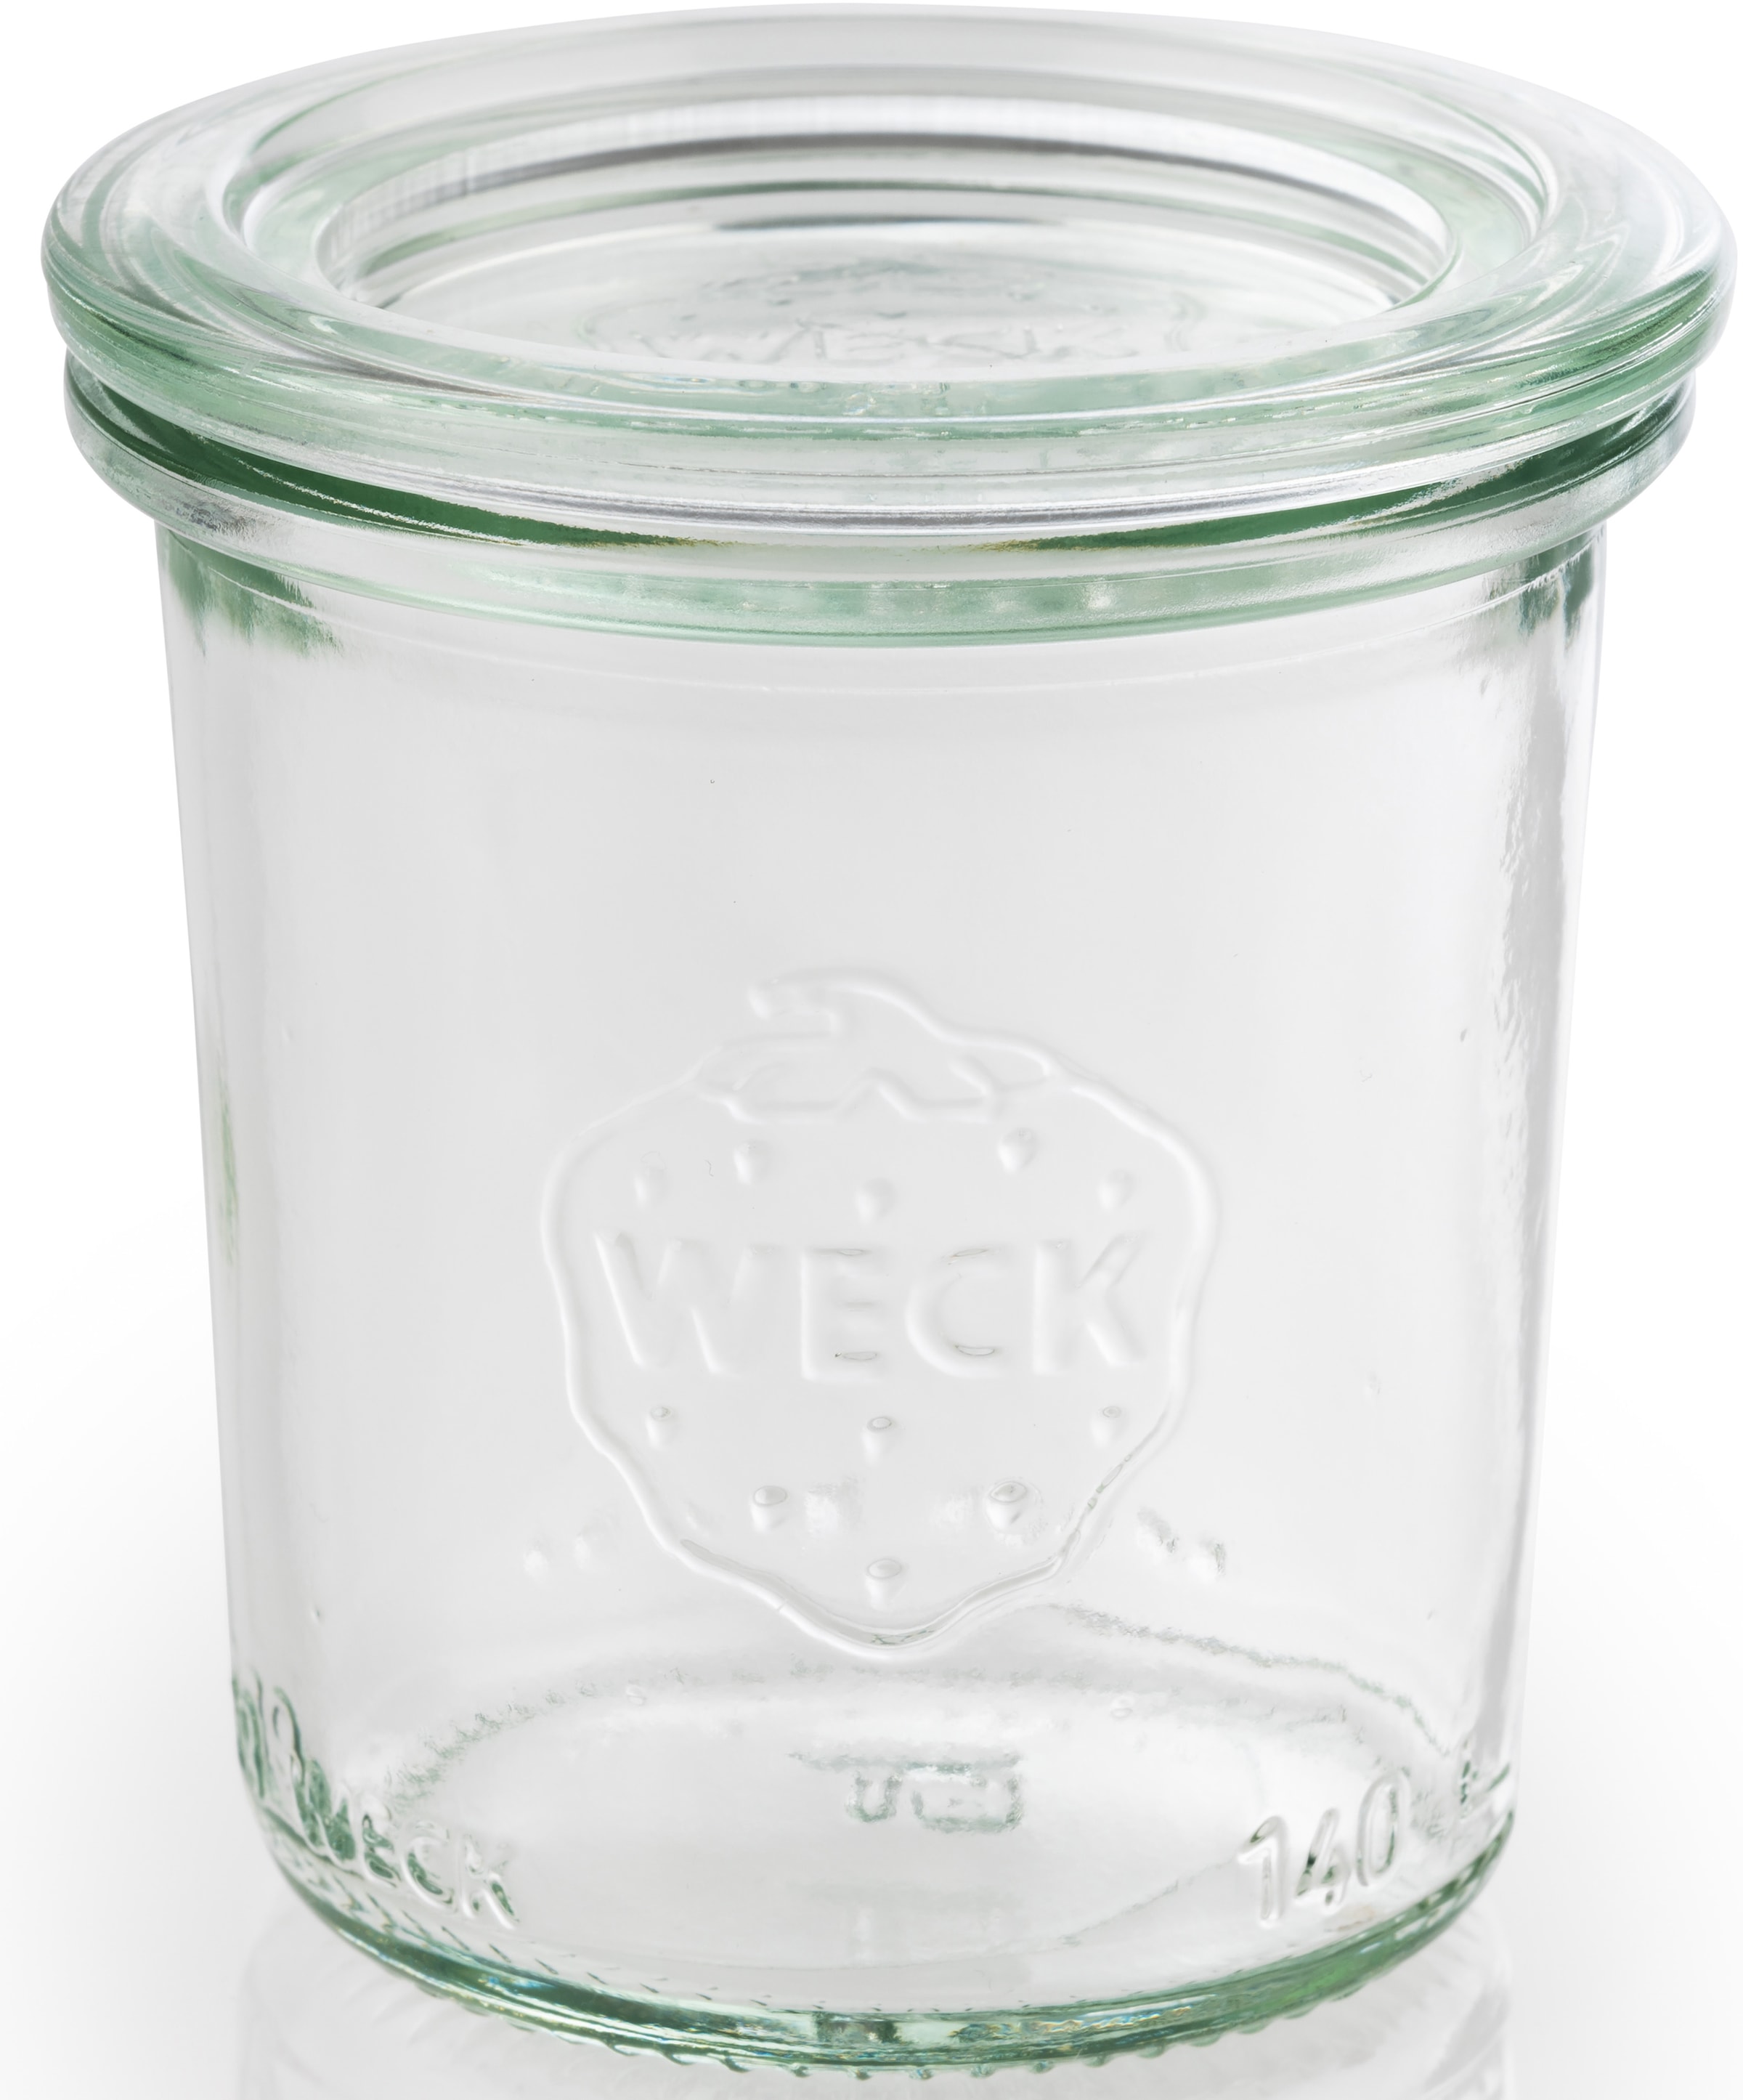 APS Einmachglas »Weck«, (Set, 12 tlg.), vielseitig einsetzbar, zum Präsentieren/Bevorraten/Einfrieren, Deko